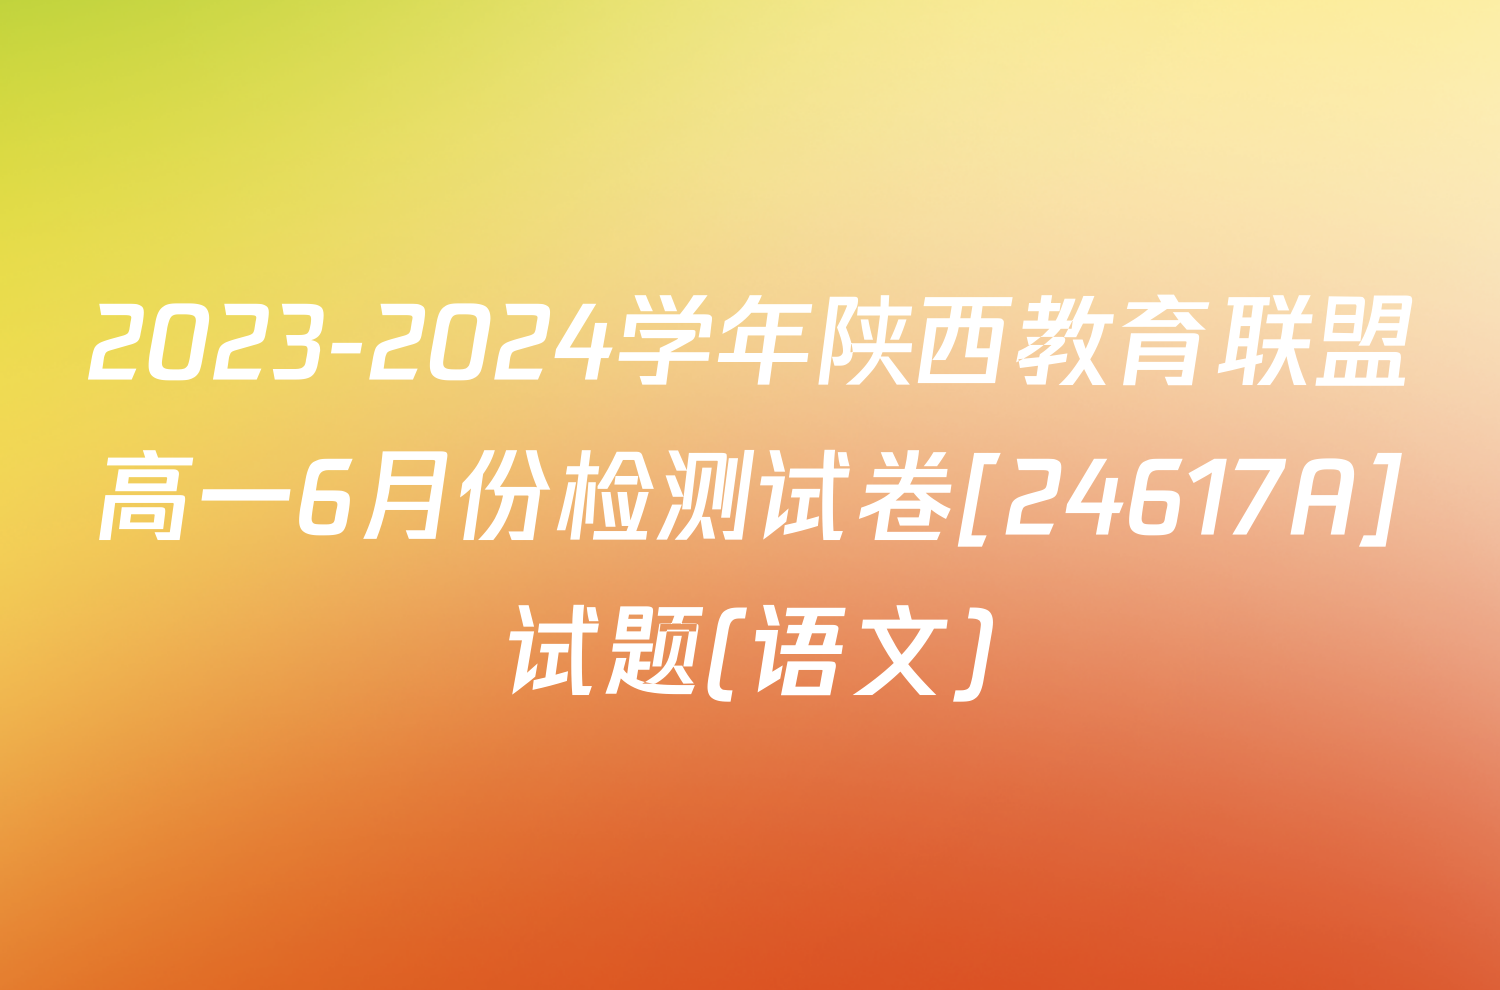 2023-2024学年陕西教育联盟高一6月份检测试卷[24617A]试题(语文)